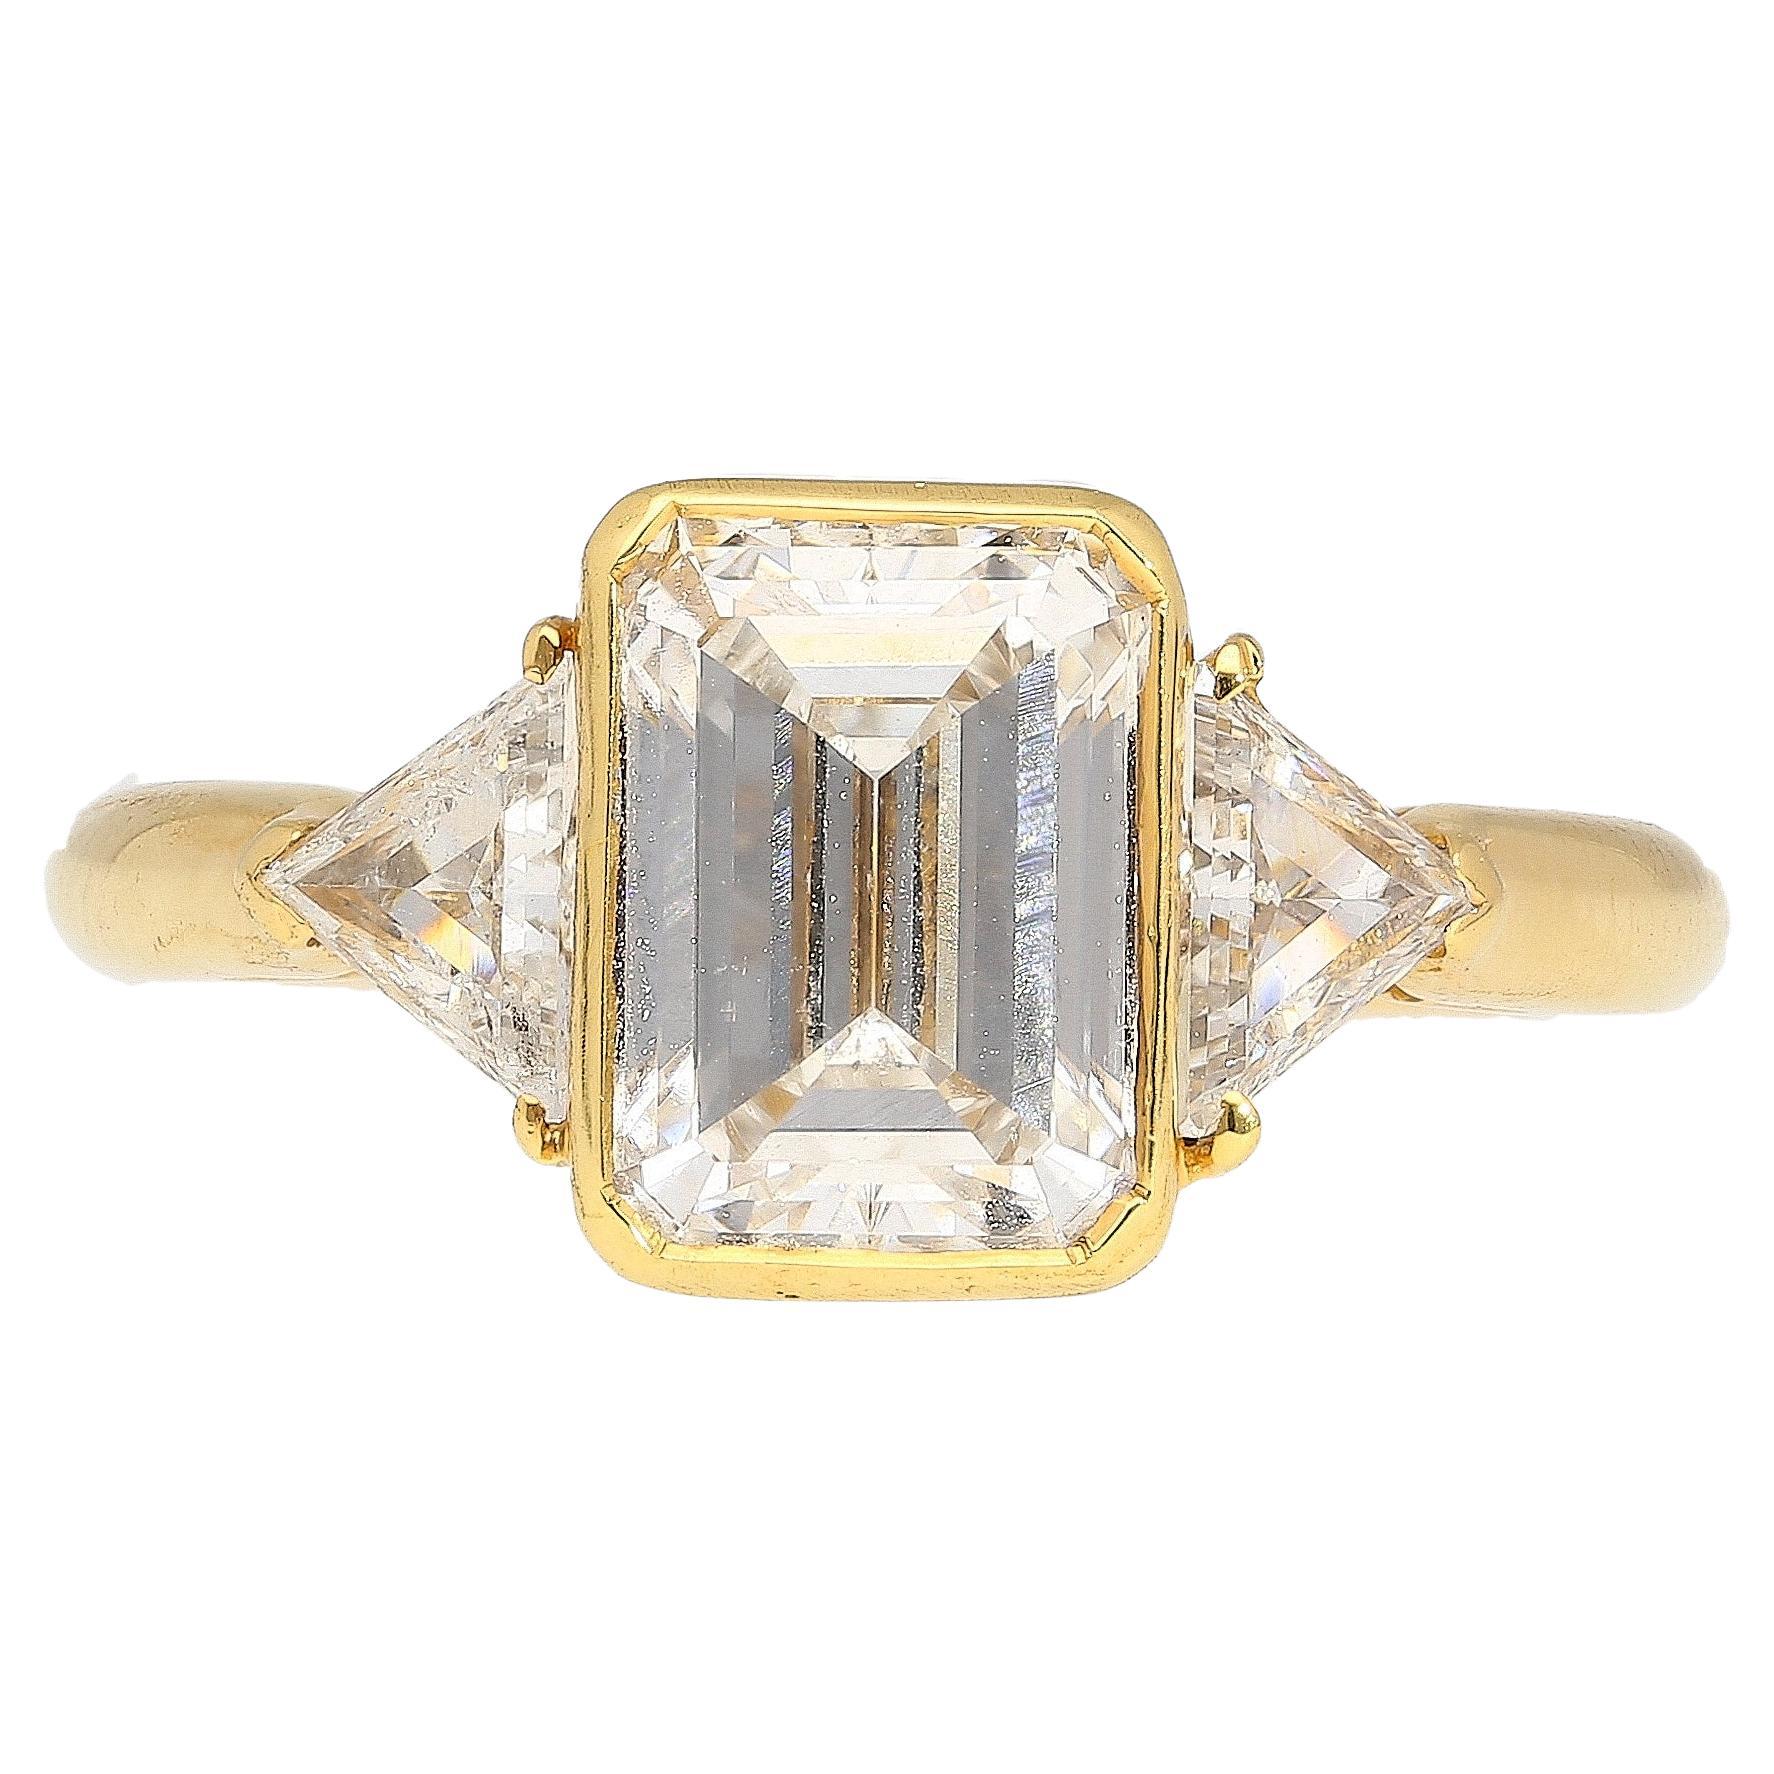 Boucheron signiert drei Stein Verlobungsring, mit einem Auge sauber GIA zertifiziert 2,09 Karat Smaragdschliff E/SI1 Diamant. Flankiert von zwei seitlichen Diamanten im Billionenschliff, die alle in glattes 18-karätiges Gelbgold gefasst sind.

Die